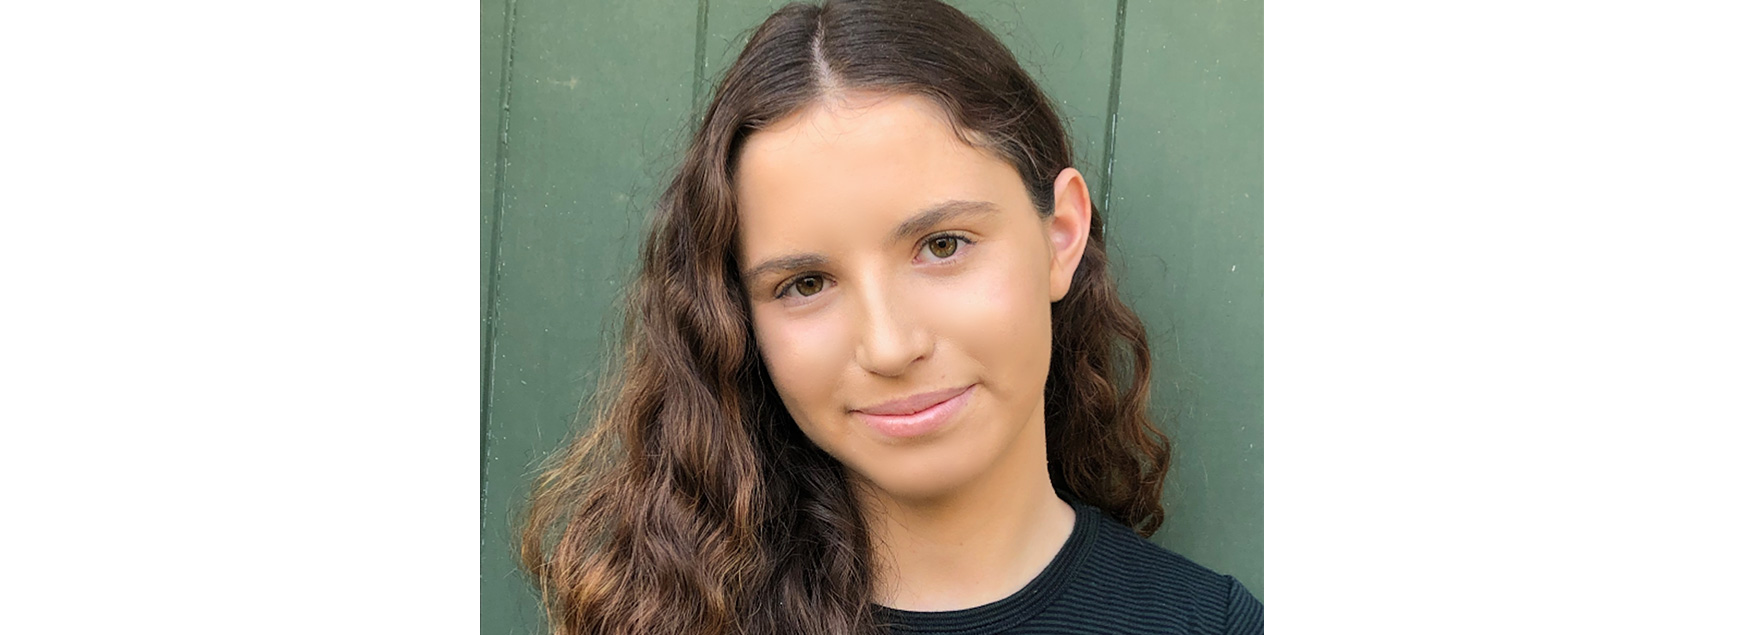 米13歳の少女が始めたニュースレター。世界を変えるための第一歩